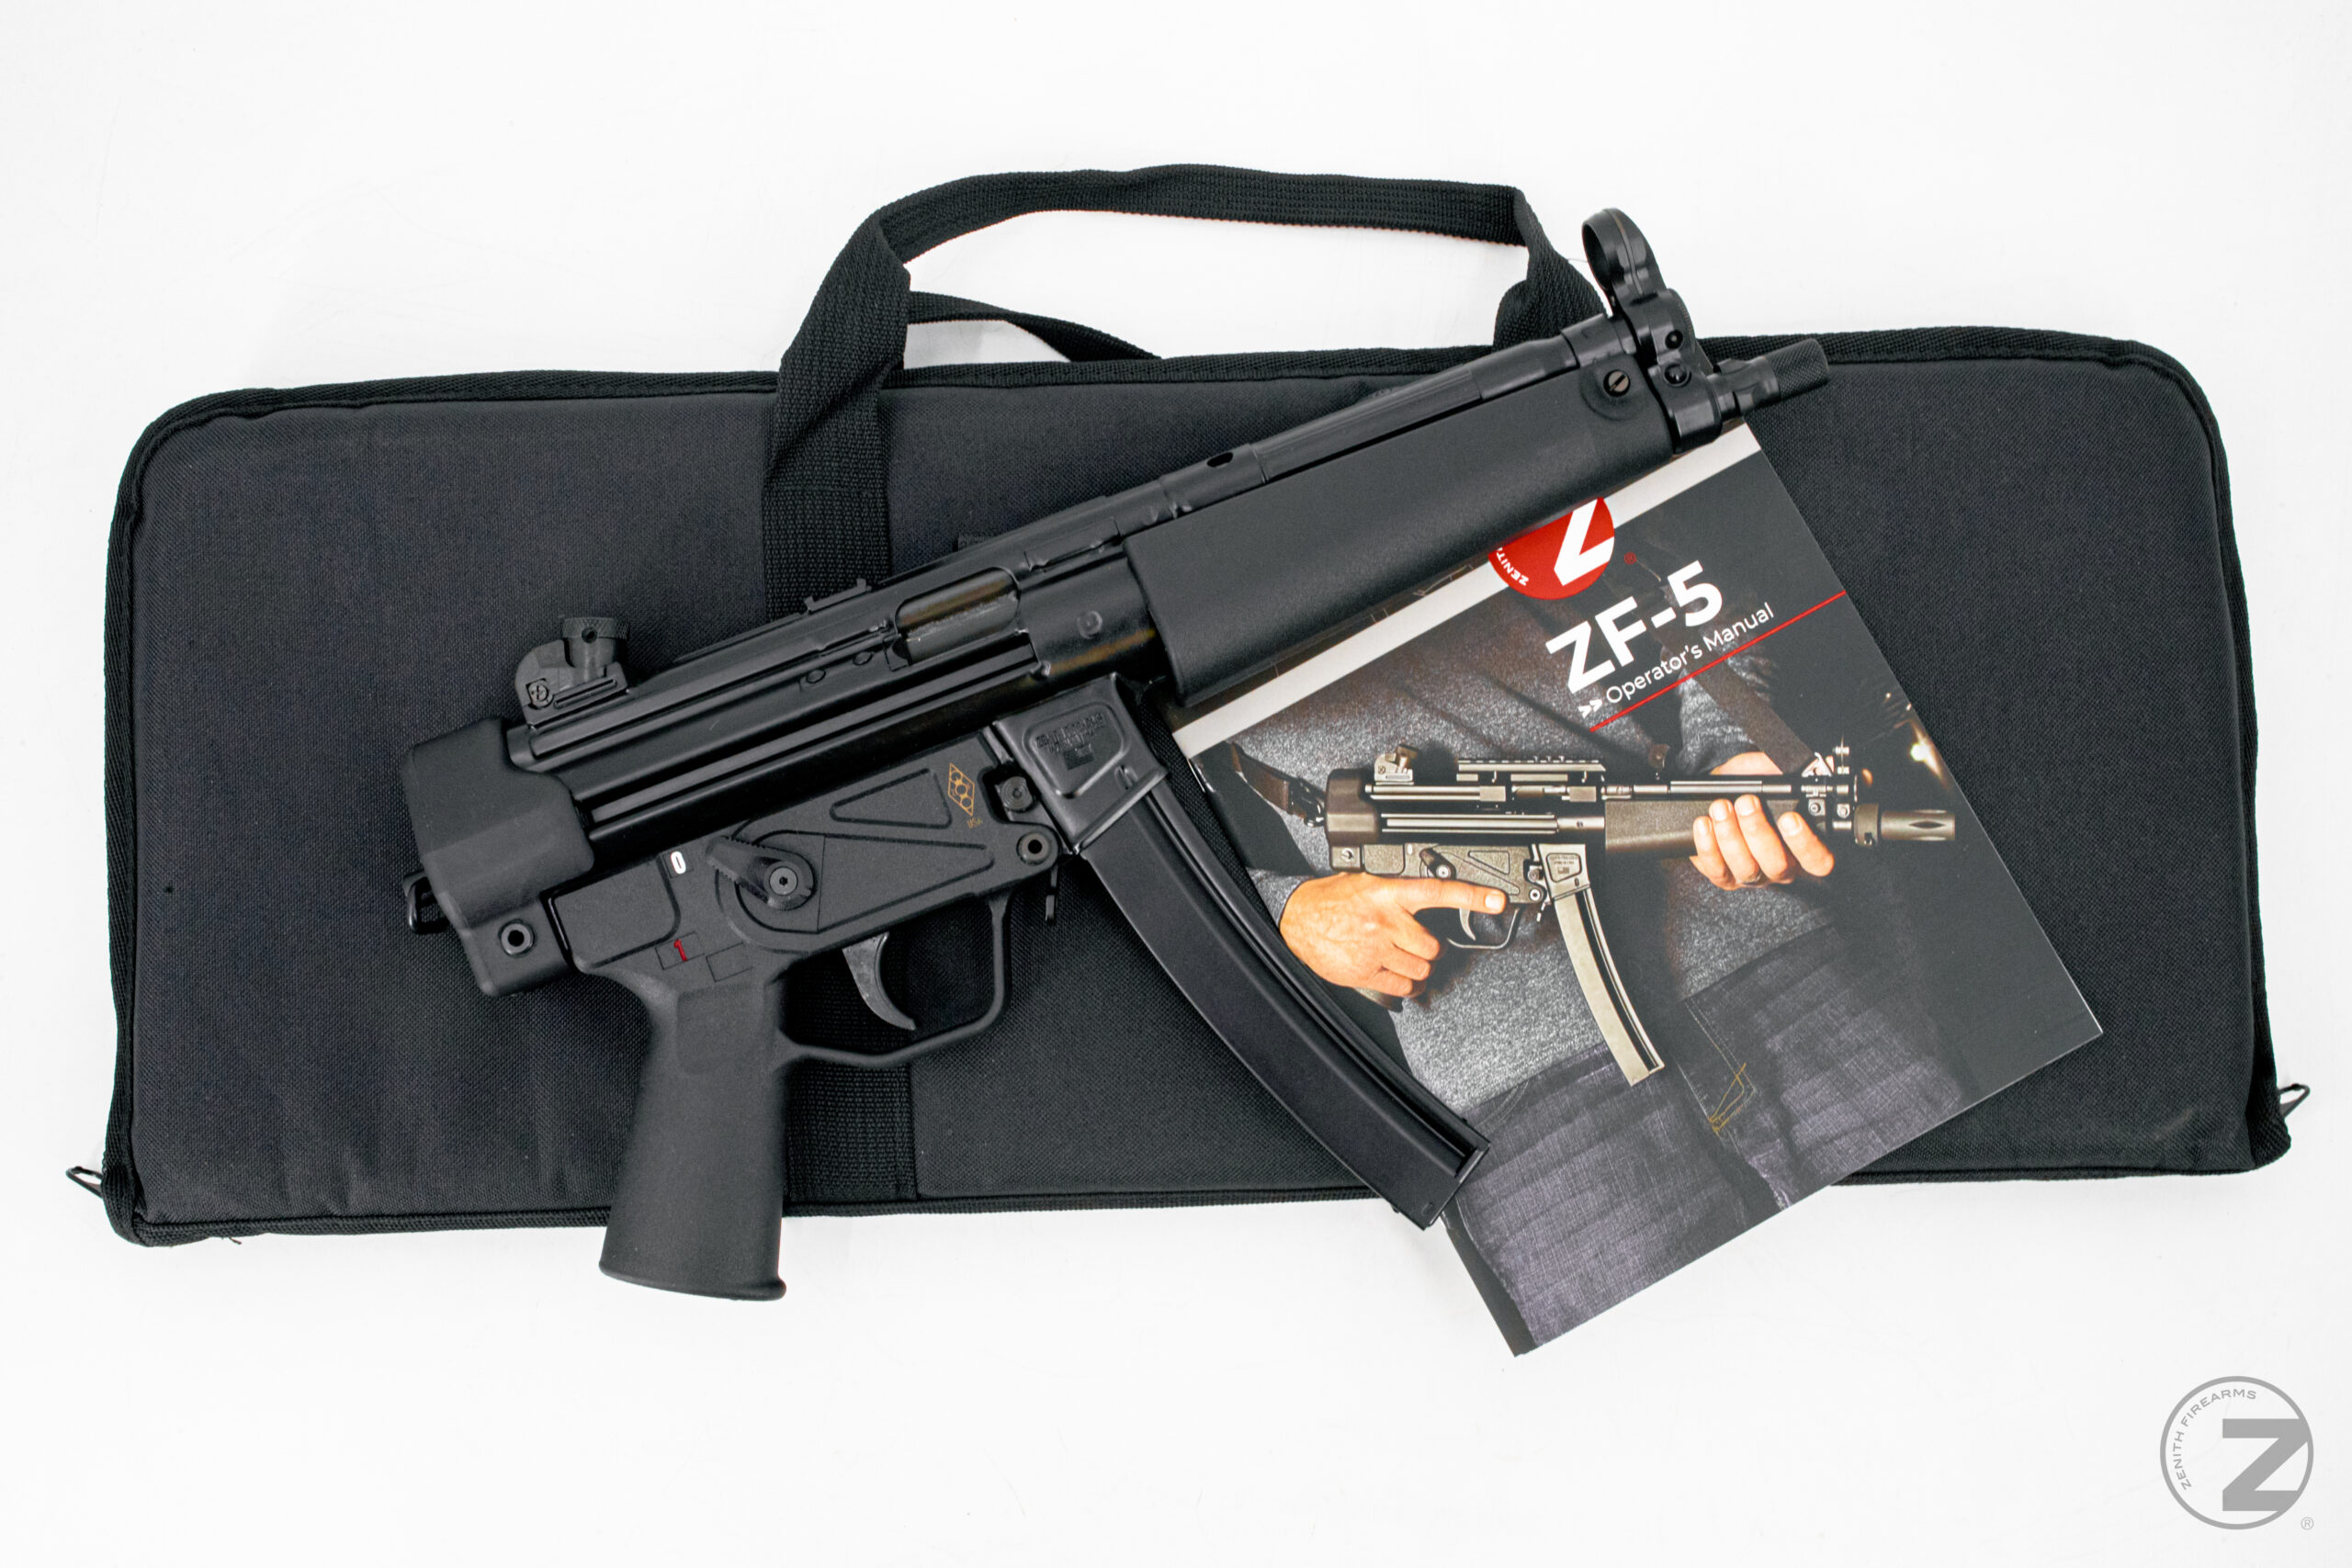 Zenith ZF-5 (MP5 Clone) Essentials